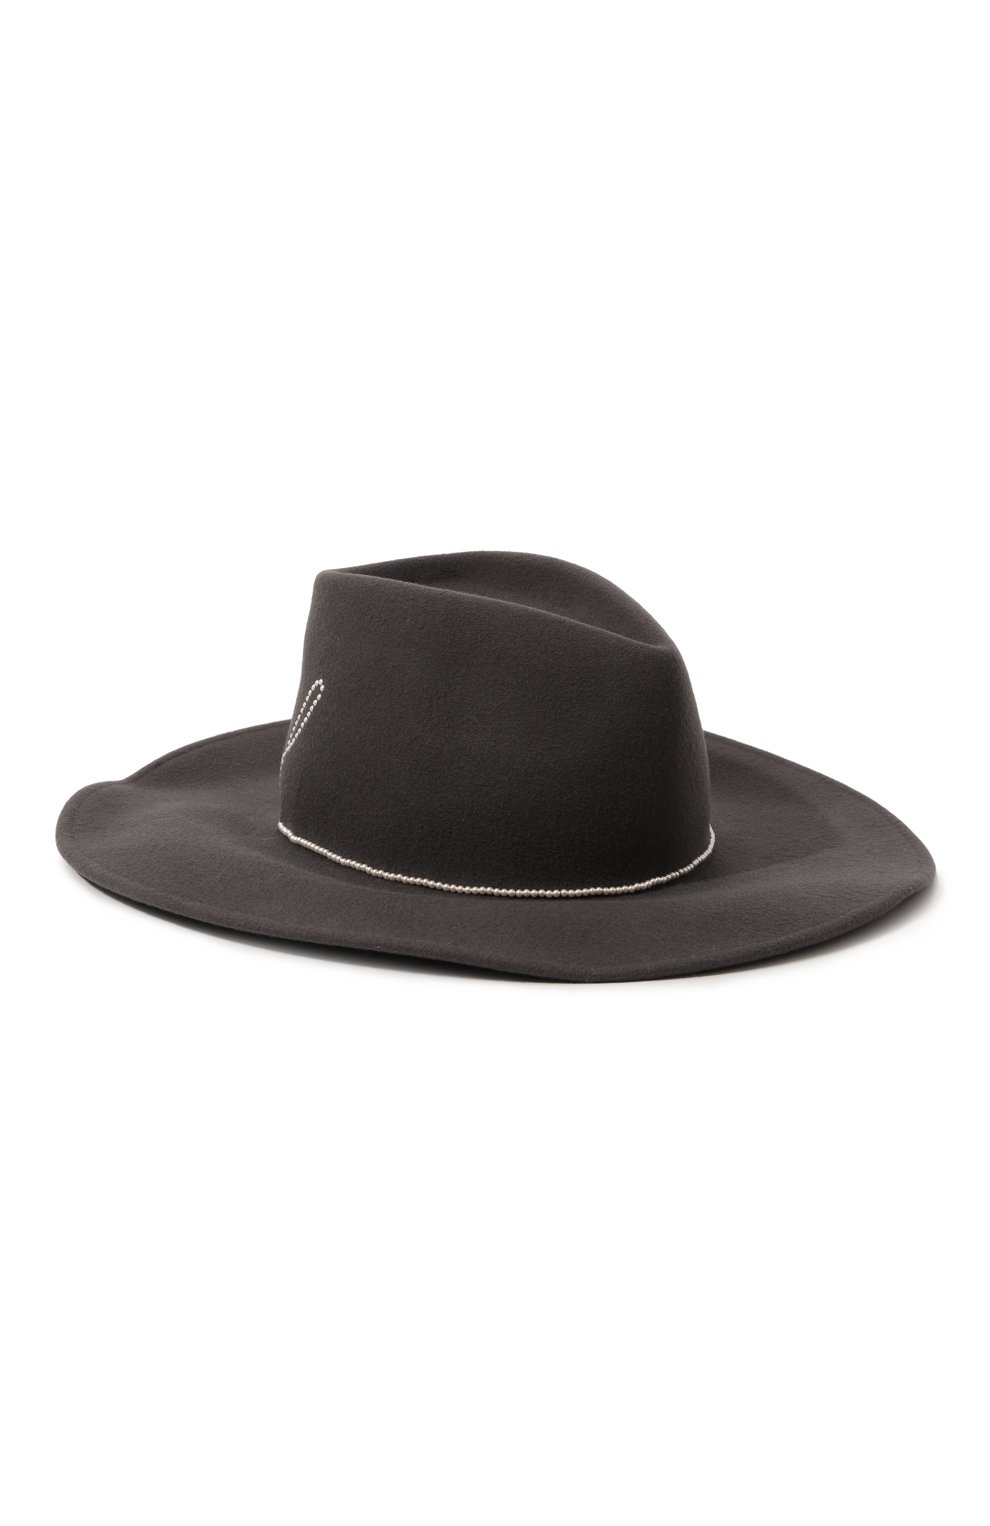 Шерстяная шляпа с отделкой жемчужинами Eugenia Kim 28097-07517